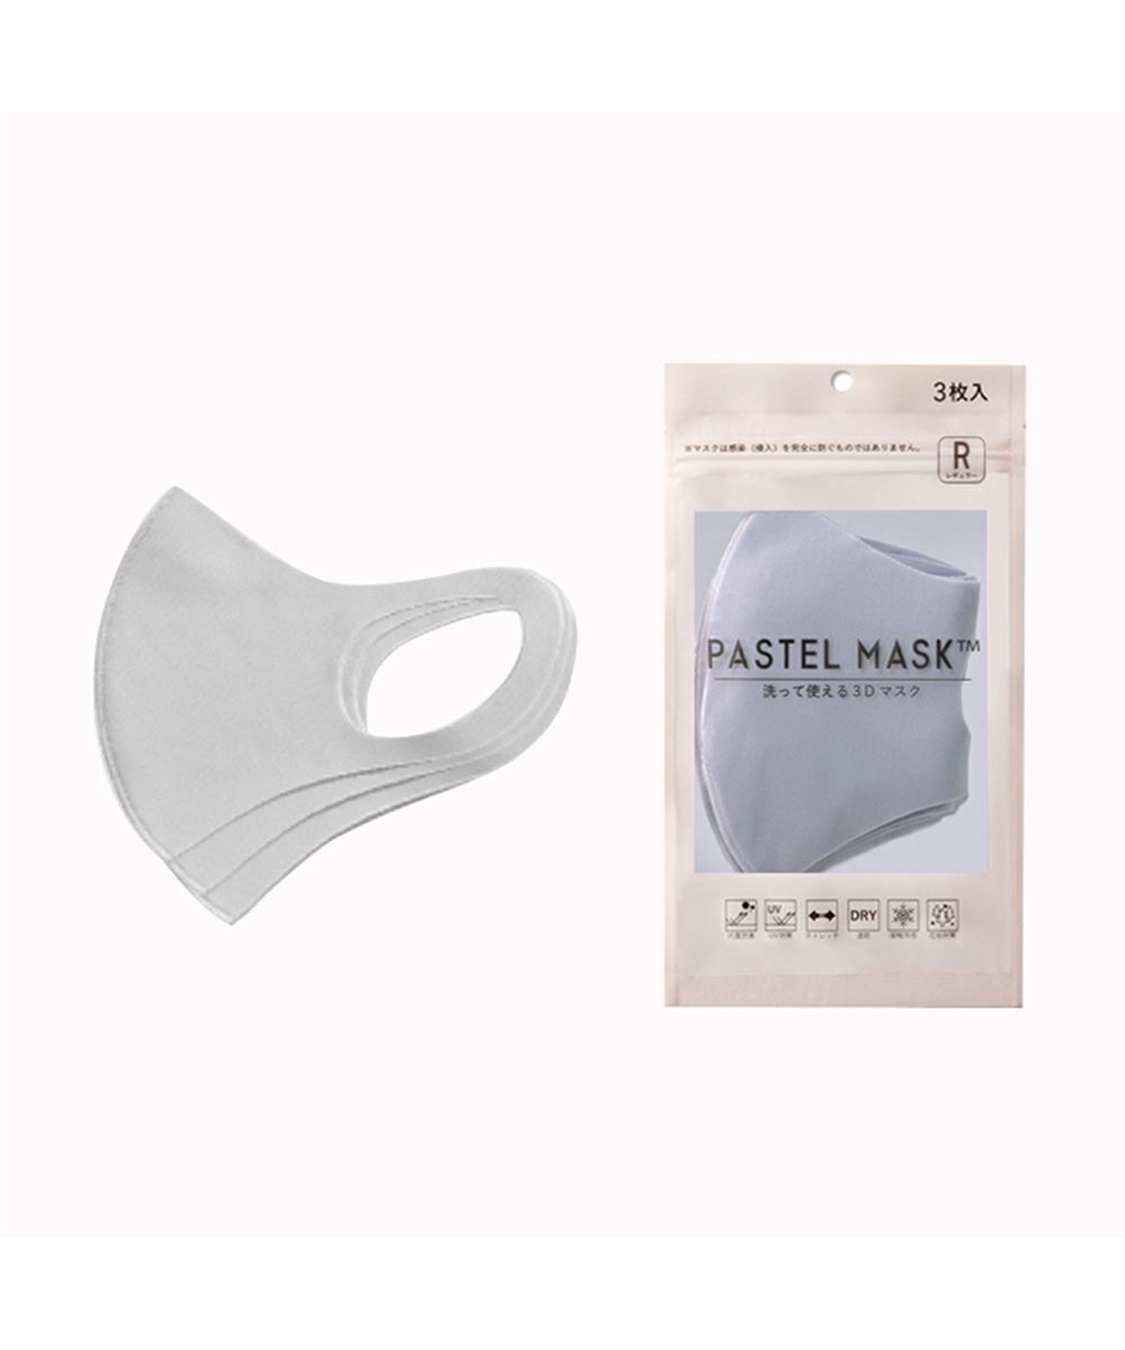 パステルマスク ３枚入 洗って使える3D布マスク 三層構造 ポリエステル素材(グレー-スモール)